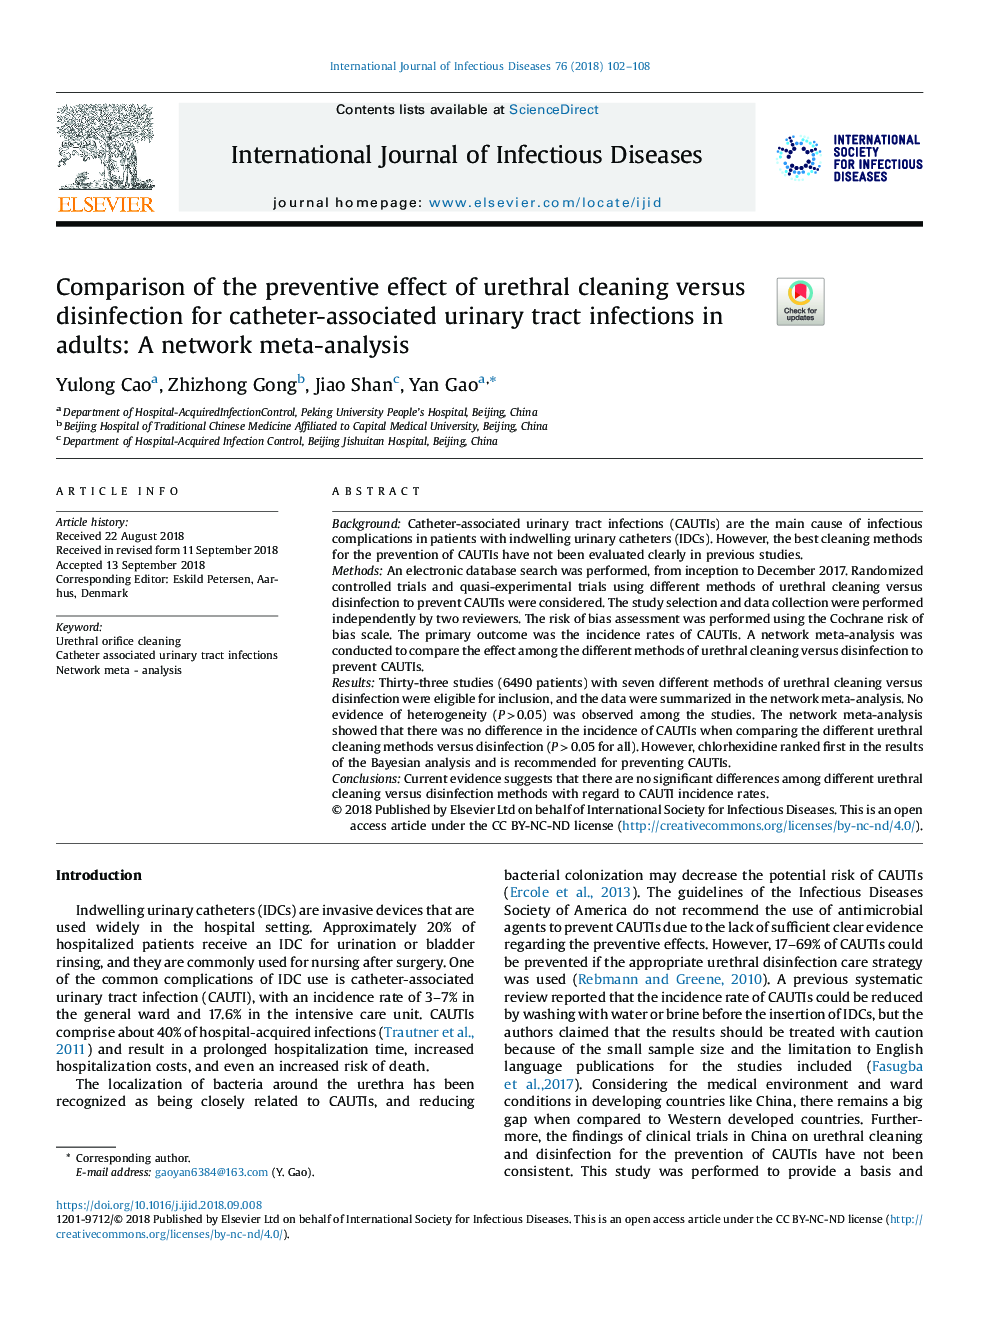 مقایسه اثر پیشگیری کننده تمیز کردن مجرای ادرار در برابر ضدعفونی شدن عفونت های دستگاه ادراری وابسته به کاتتر در بزرگسالان: متاآنالیز شبکه